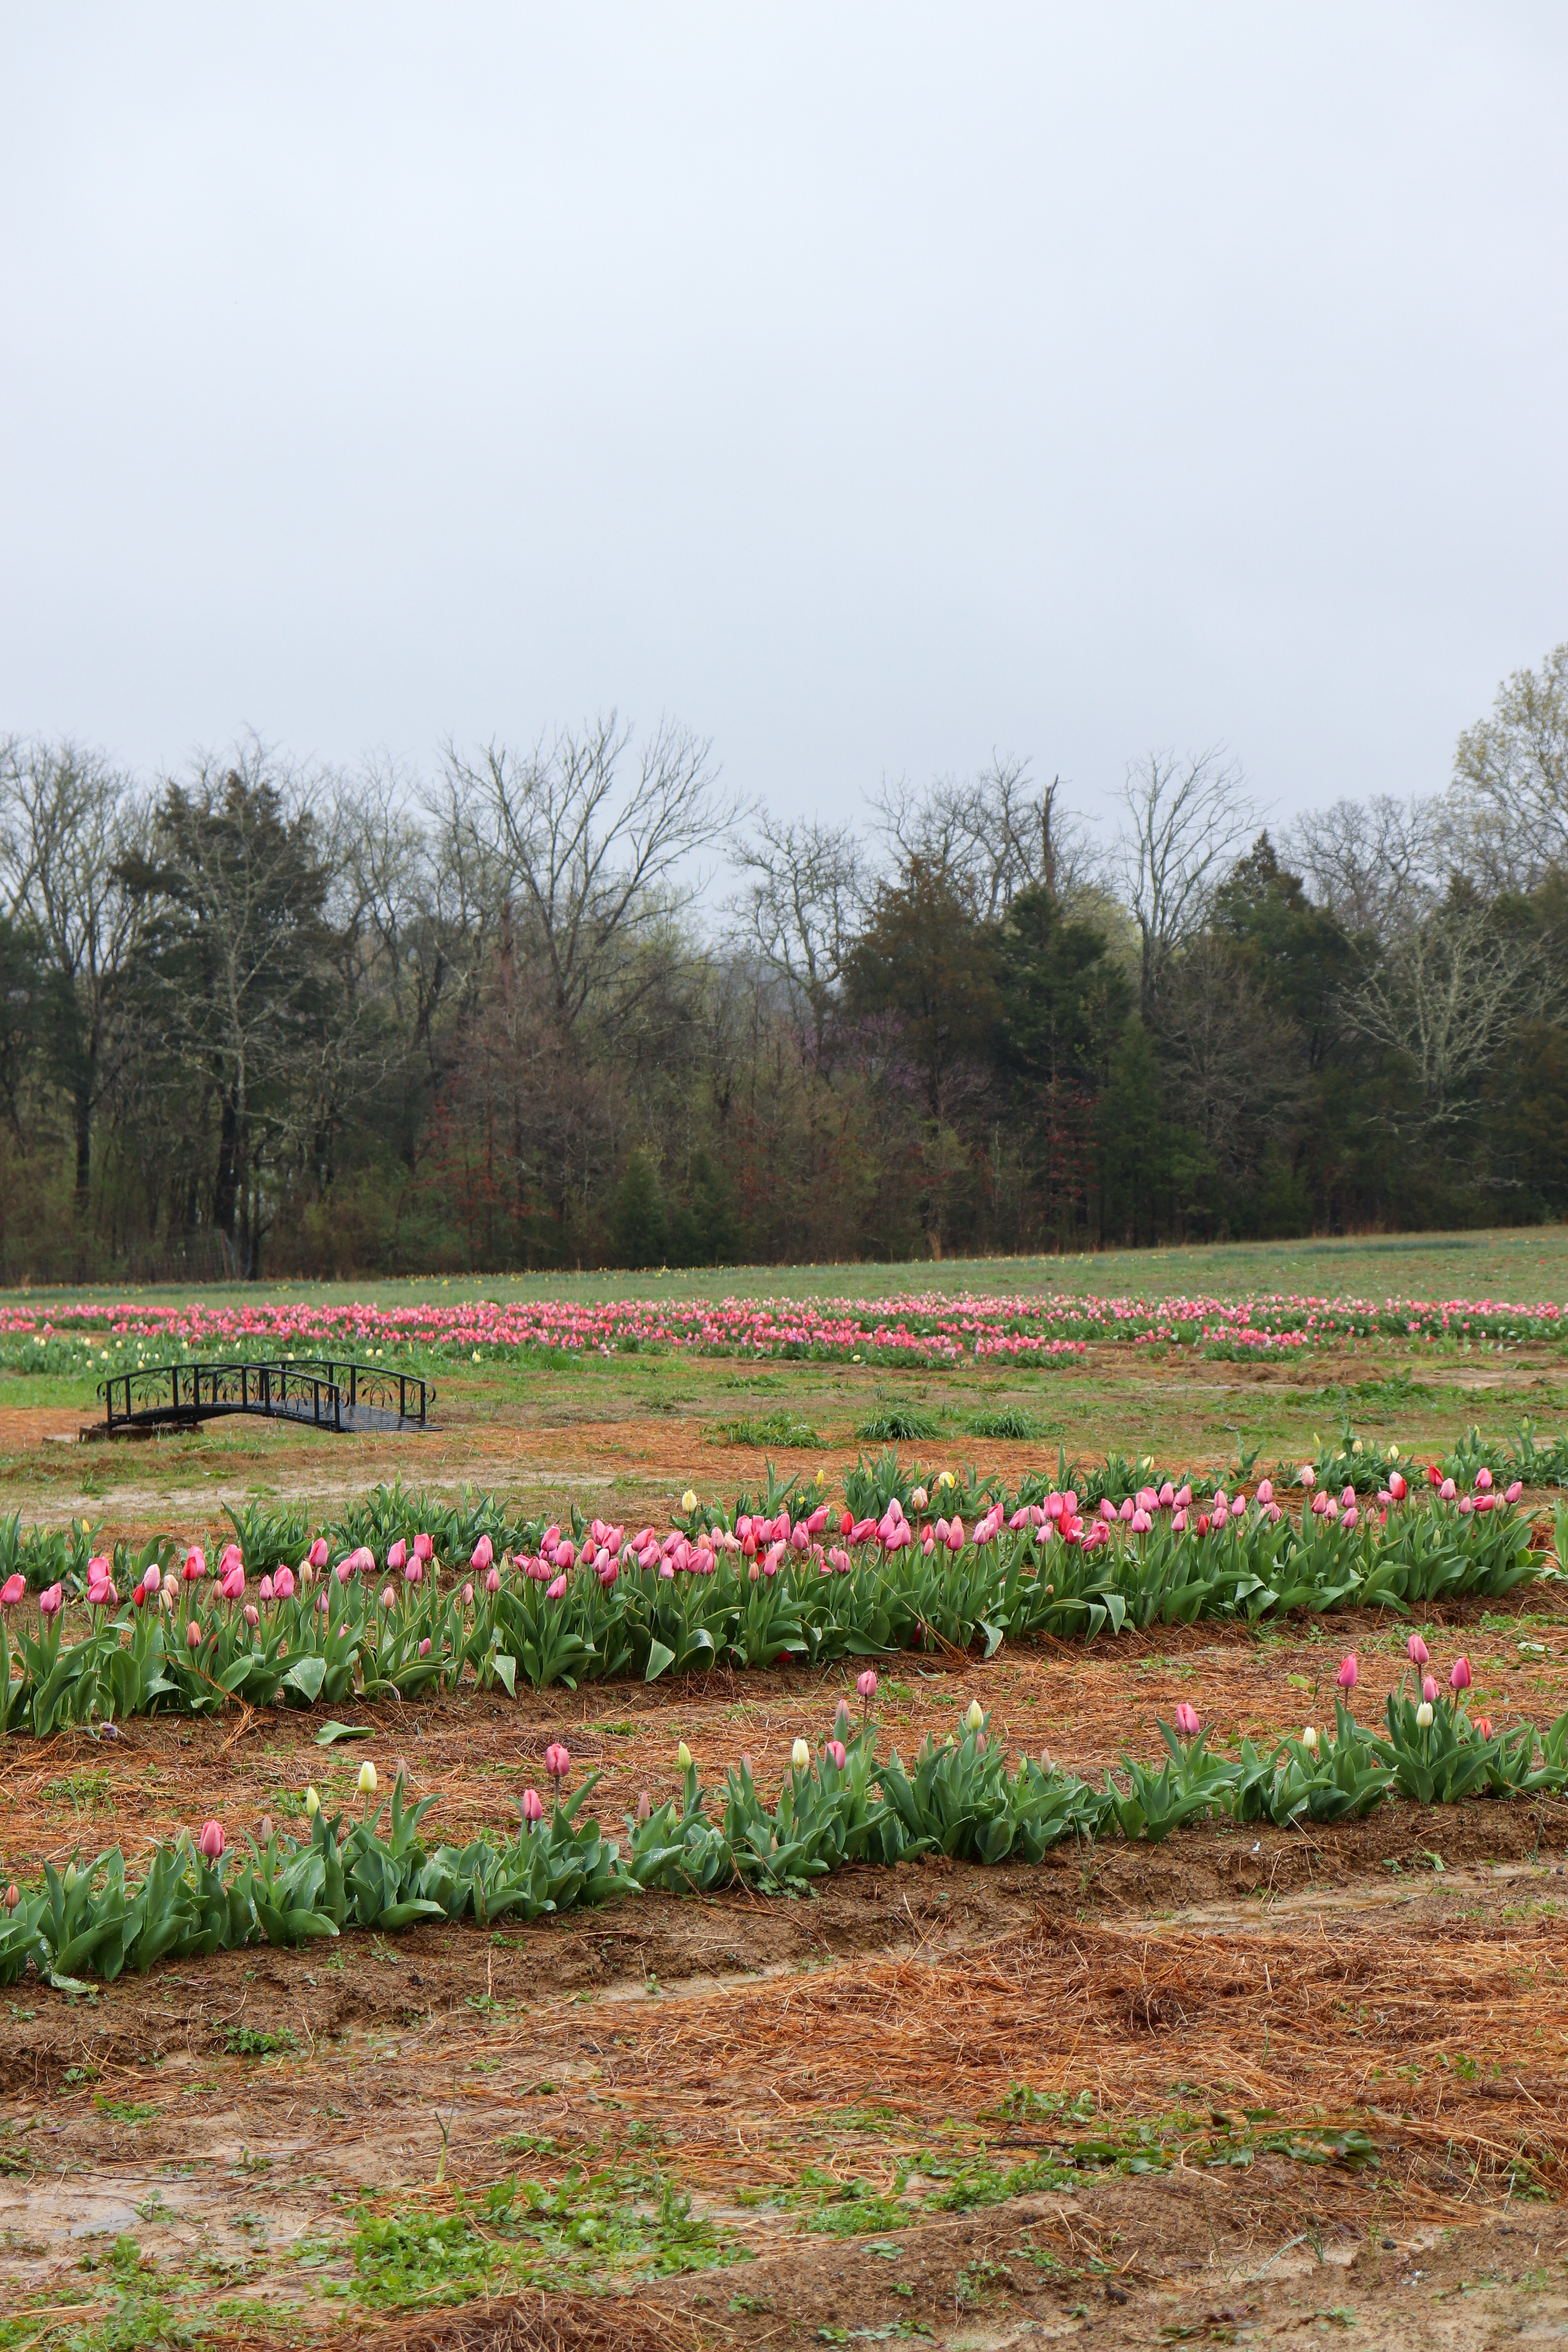 tulip farm